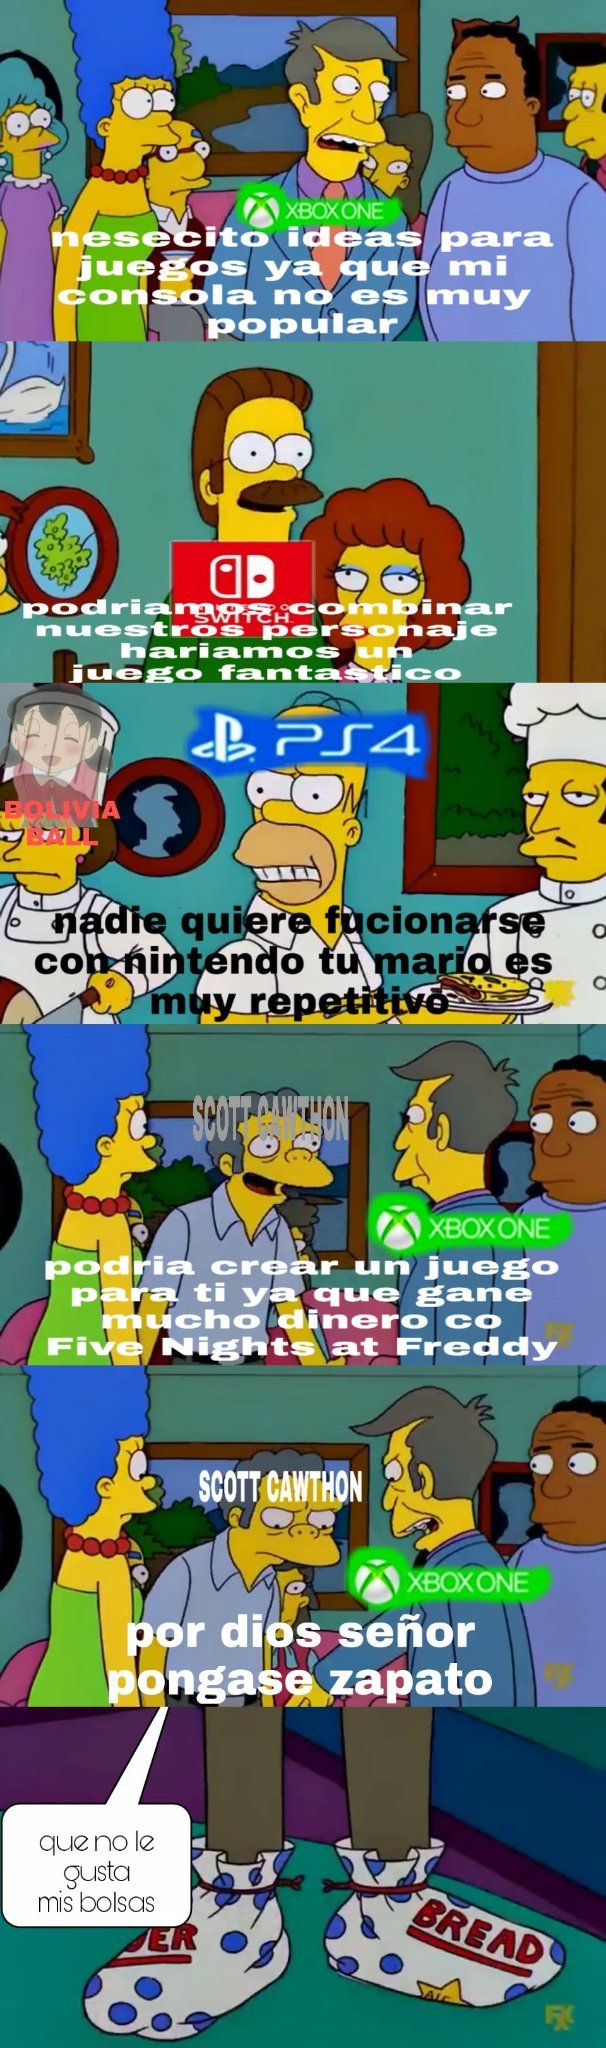 Xbox en estos momentos - meme